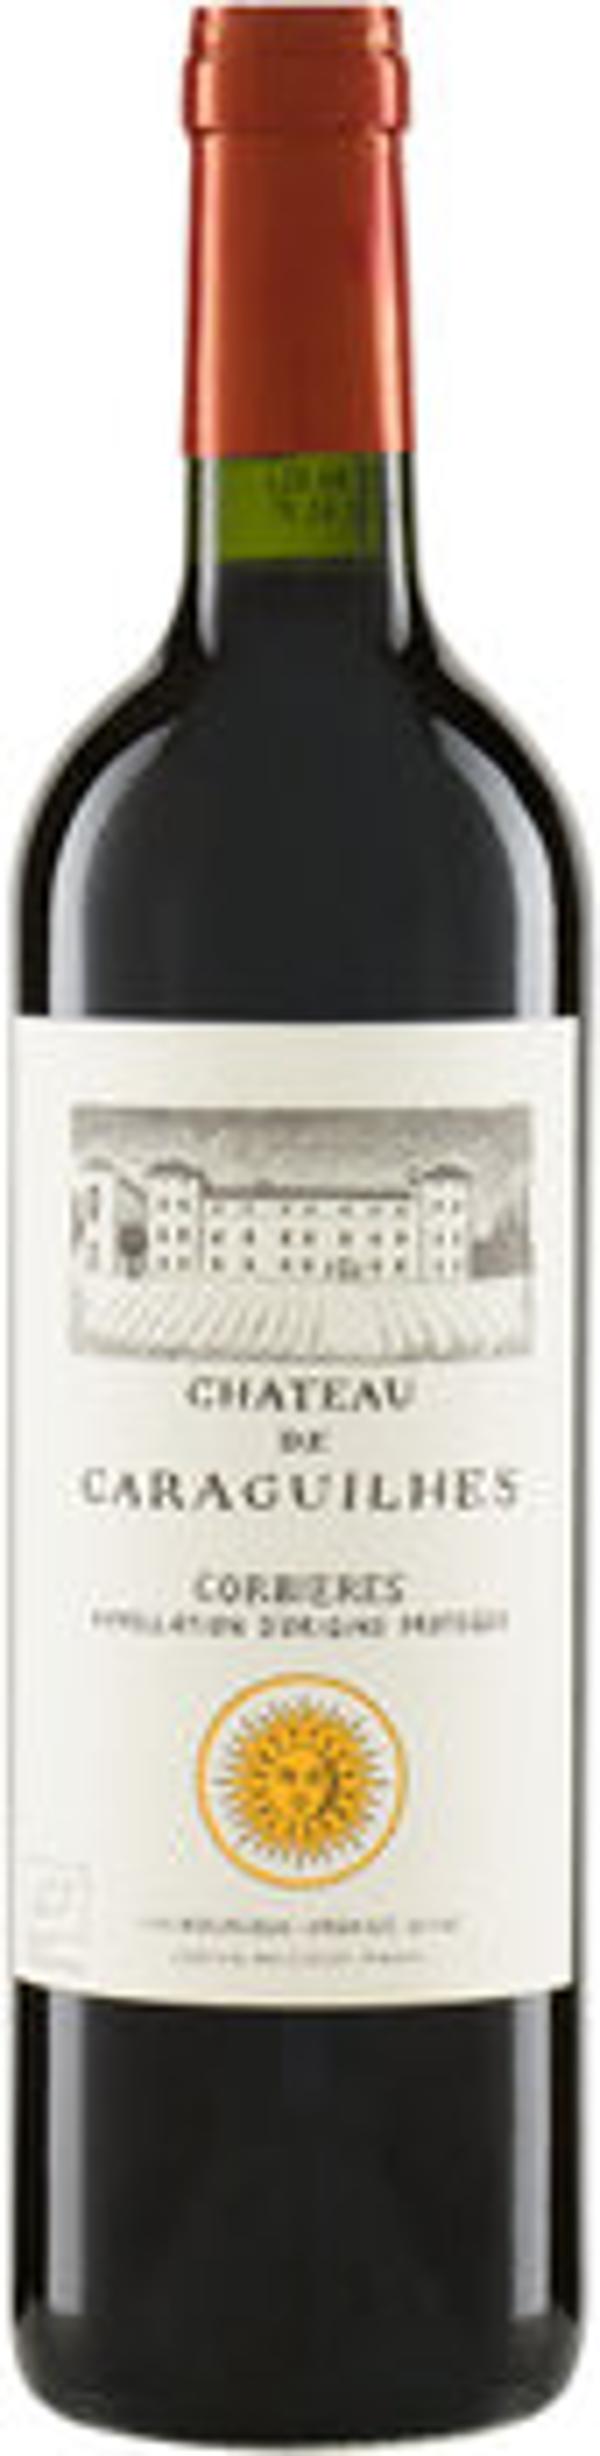 Produktfoto zu Château de Caraguilhes Corbières Rouge AOP 2020 6*0,75l